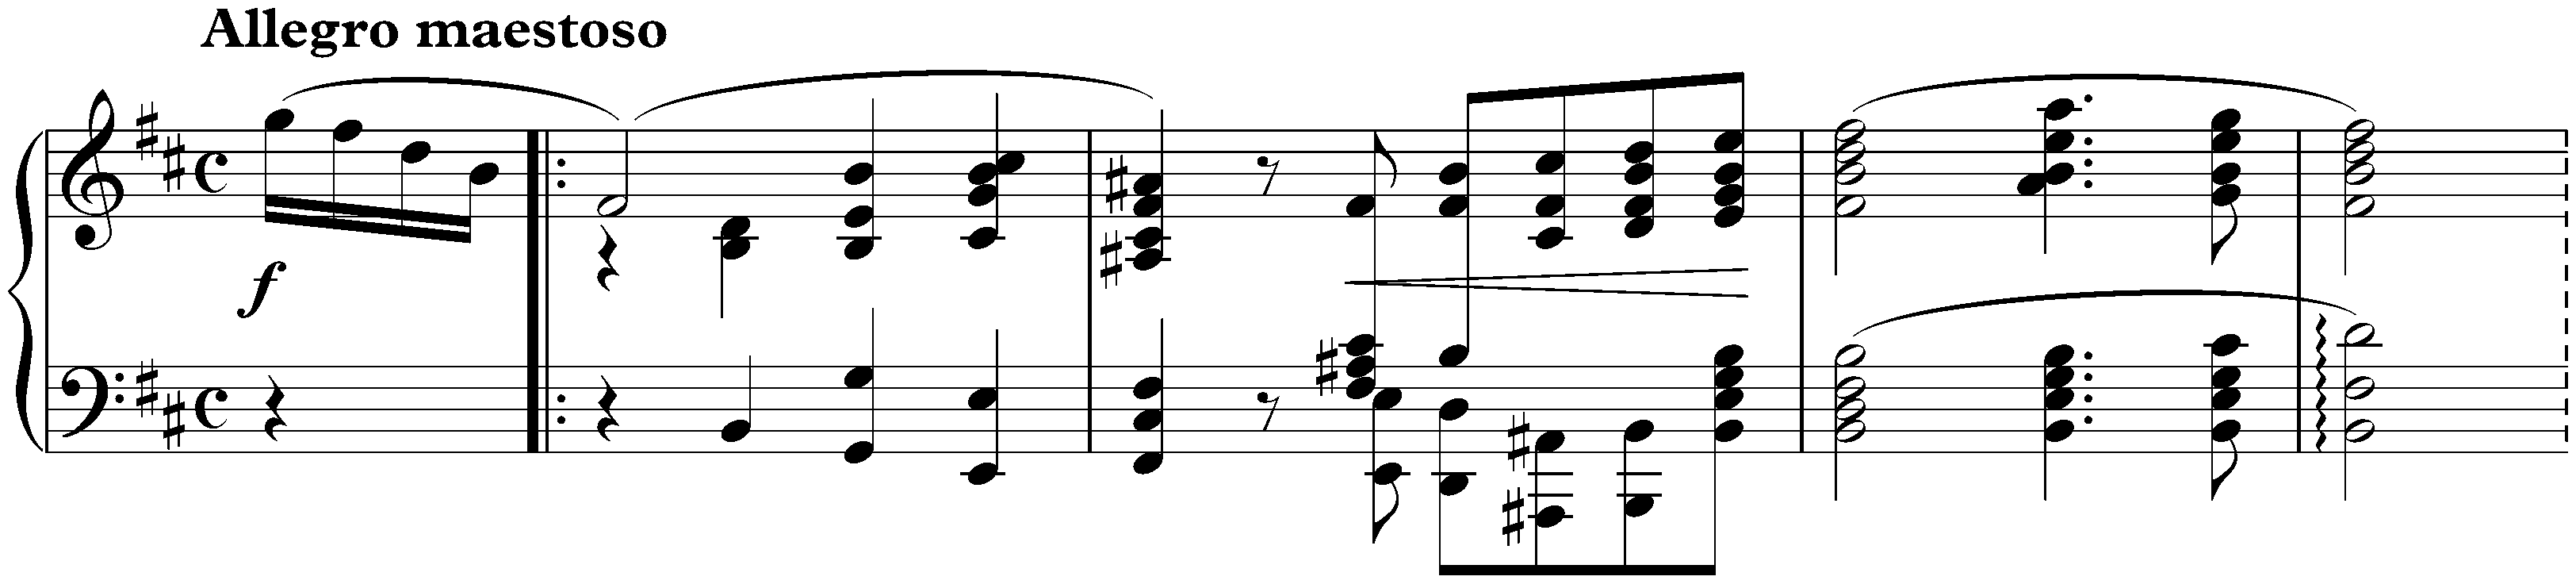 Sonata no. 3 in B minor, op. 58; 1. Allegro maestoso